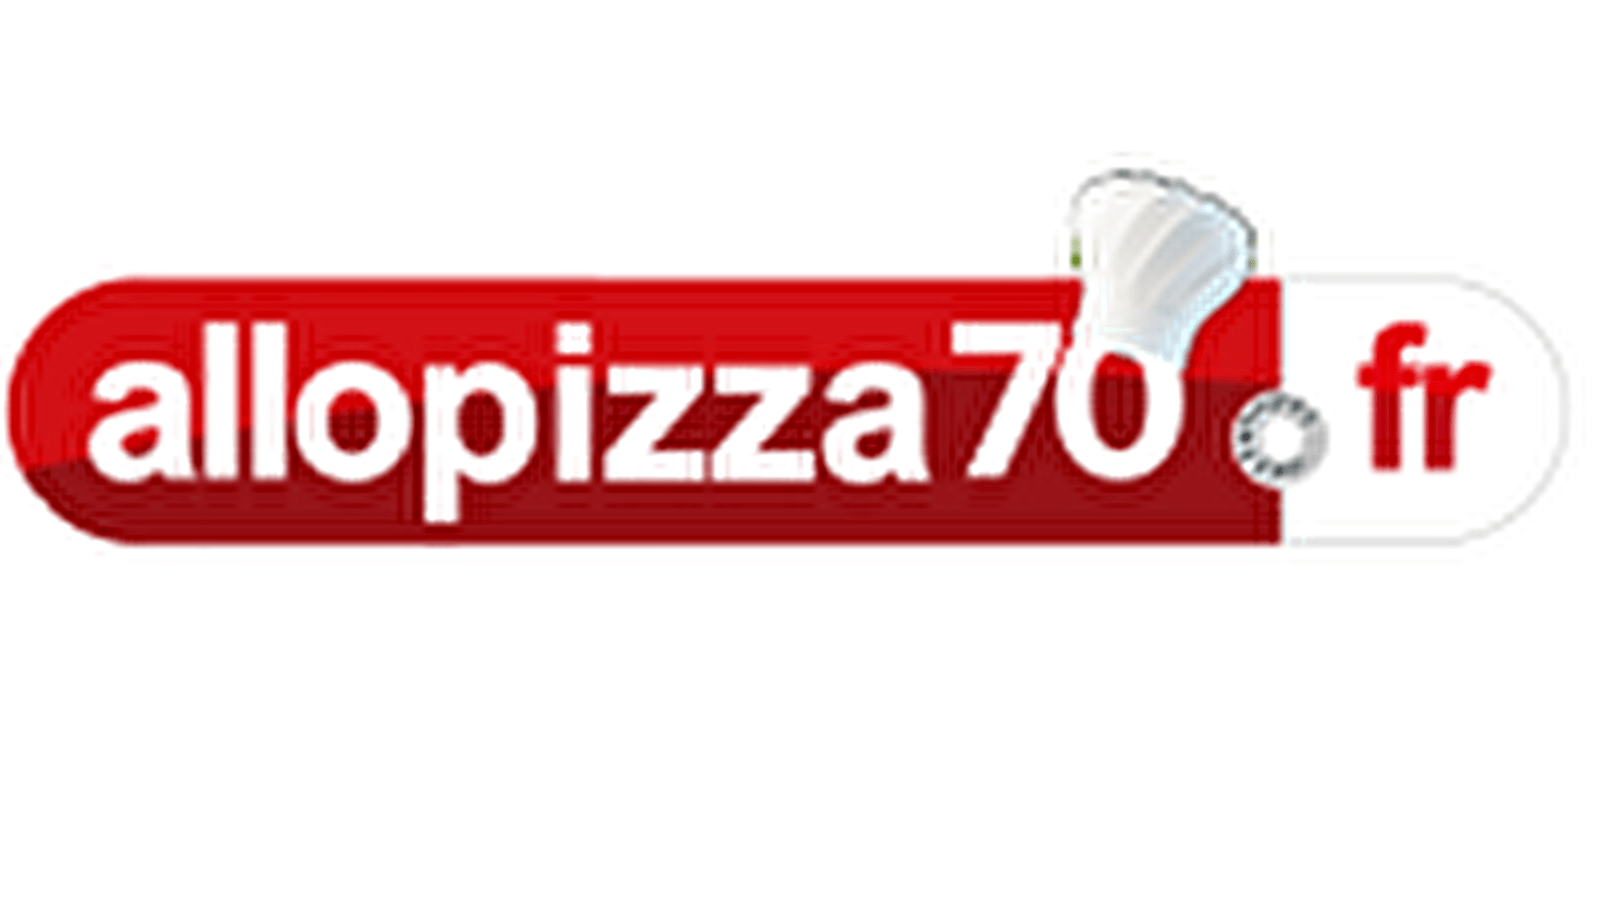 Allo Pizza 70